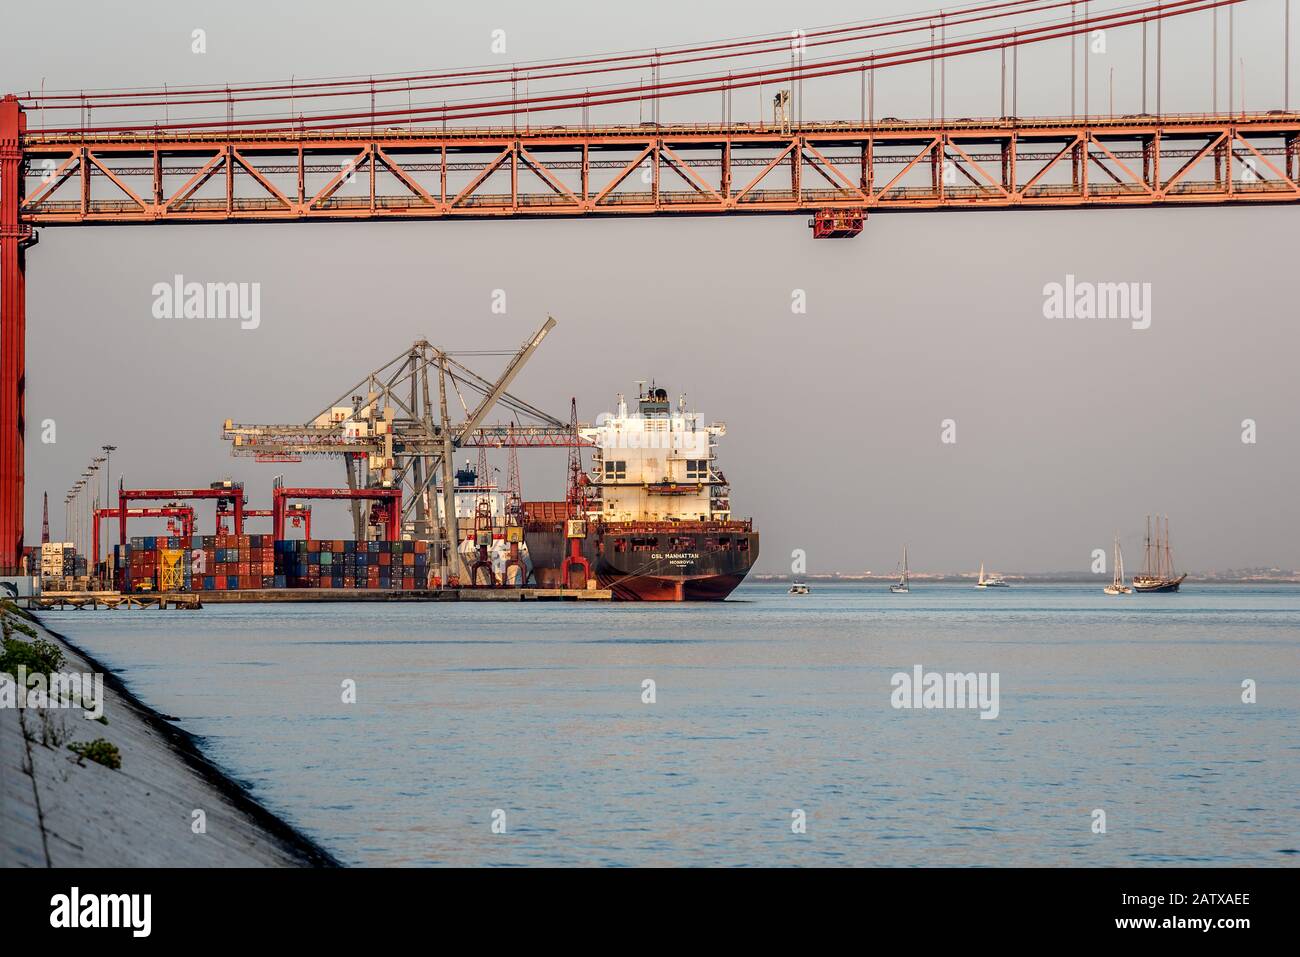 Container nave carico scarico al terminal di spedizione sul fiume Tejo accanto al ponte 25 de Abril in Alcantara Lisbona Portogallo in mare calmo nel pomeriggio Foto Stock